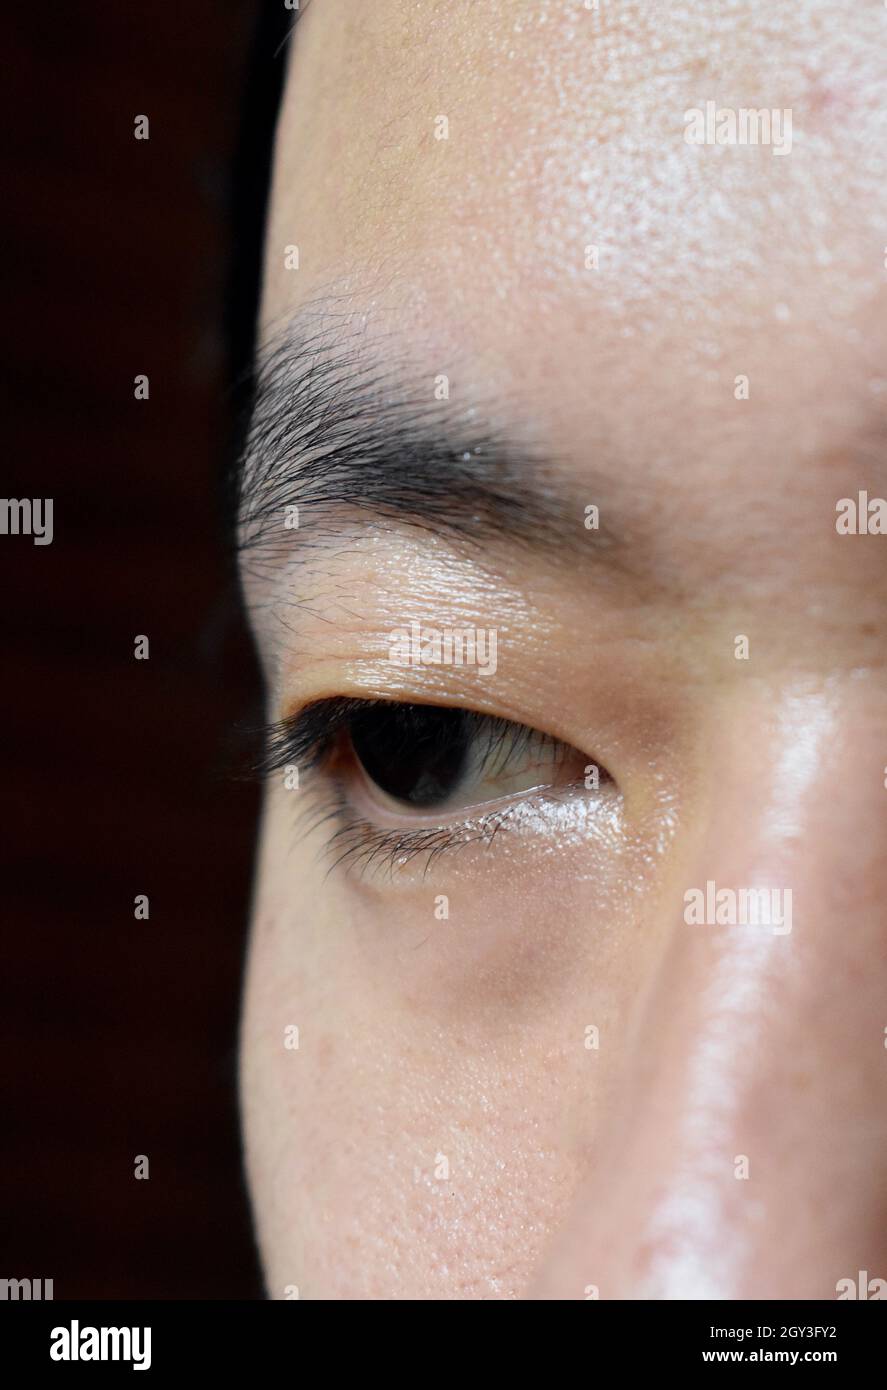 Südostasiatischer, chinesischer junger Mann mit einem einzigen Augenlid oder Monolid. Ein Monolid bedeutet, dass sich unterhalb des Brauenbereichs keine sichtbare Faltenlinie befindet. Stockfoto